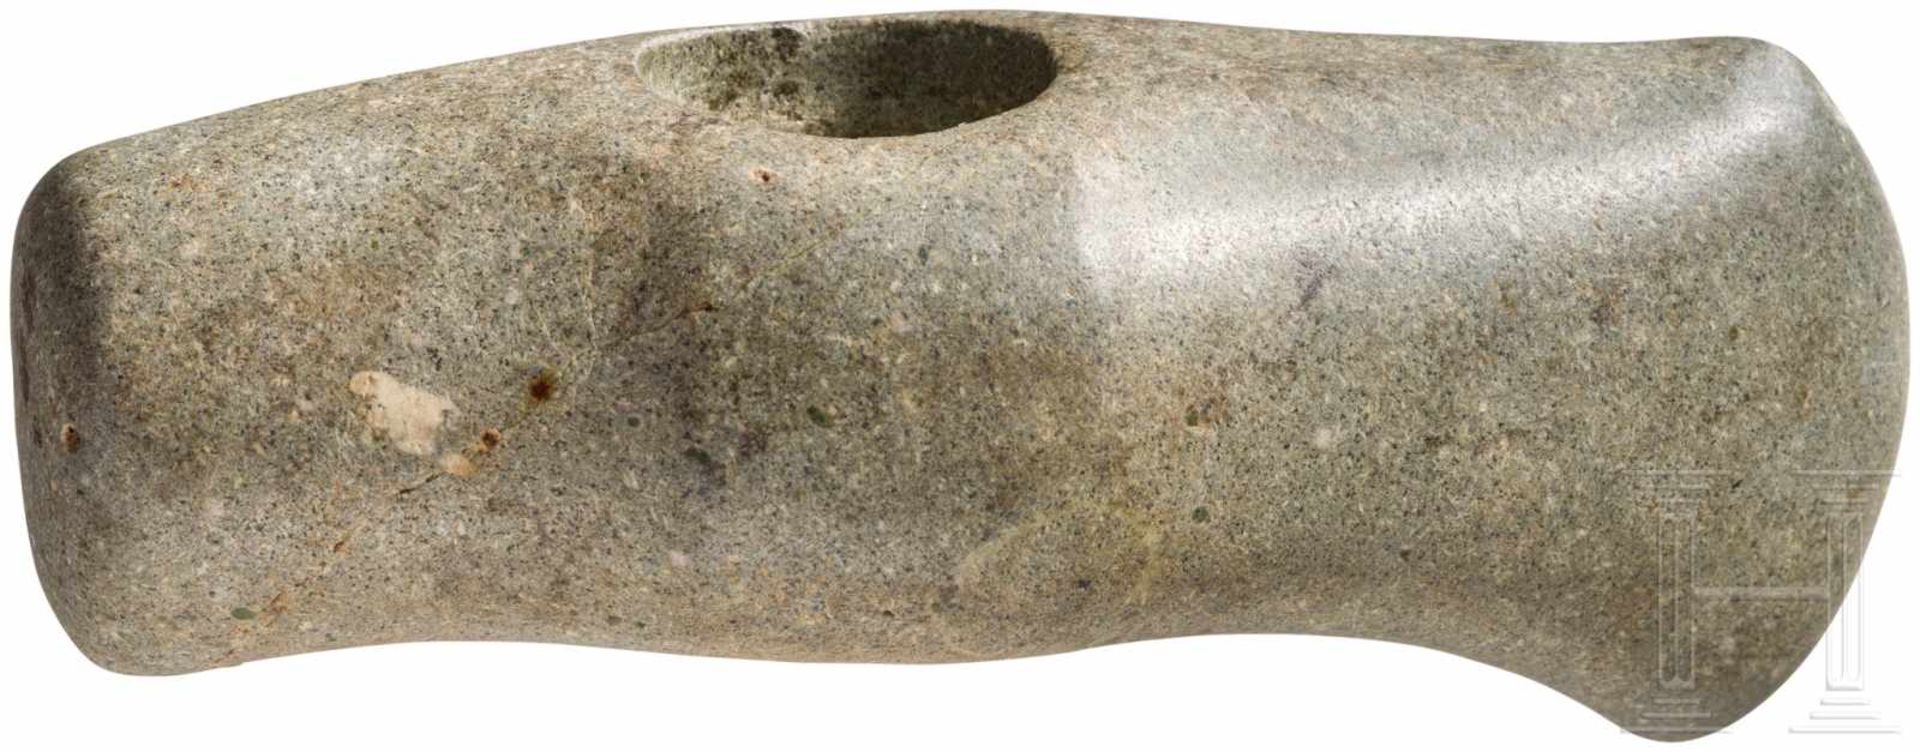 Hammeraxt, Endneolithikum, 2800 - 2500 v. Chr.Kurze Axt aus hellgrauem Felsgestein. Runder Nacken.